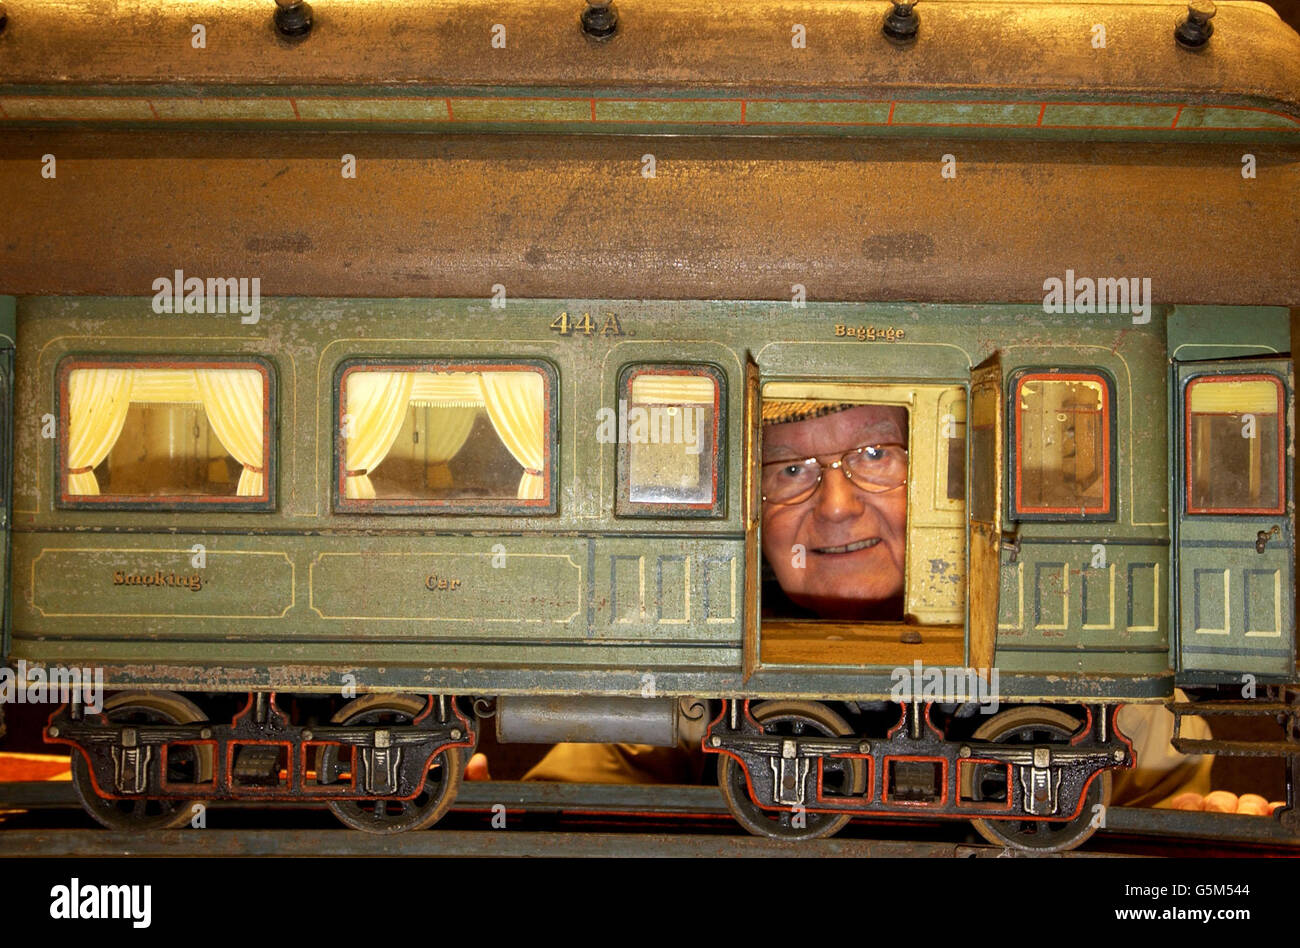 Jouet le plus cher/ Train set Photo Stock - Alamy